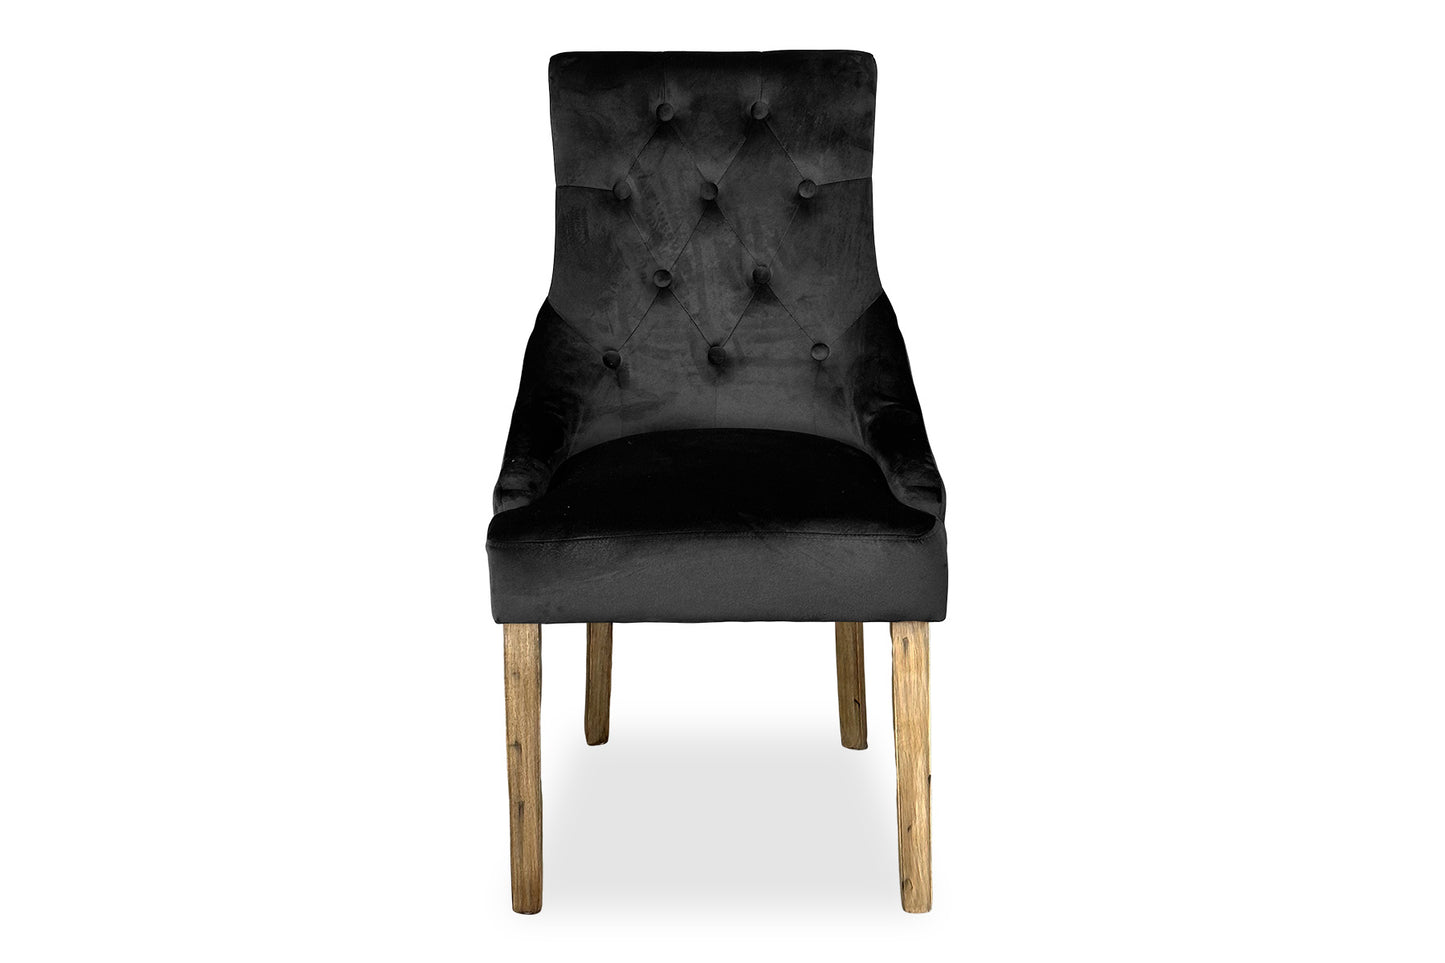 Antique Scoop Back Chair - Black Velvet